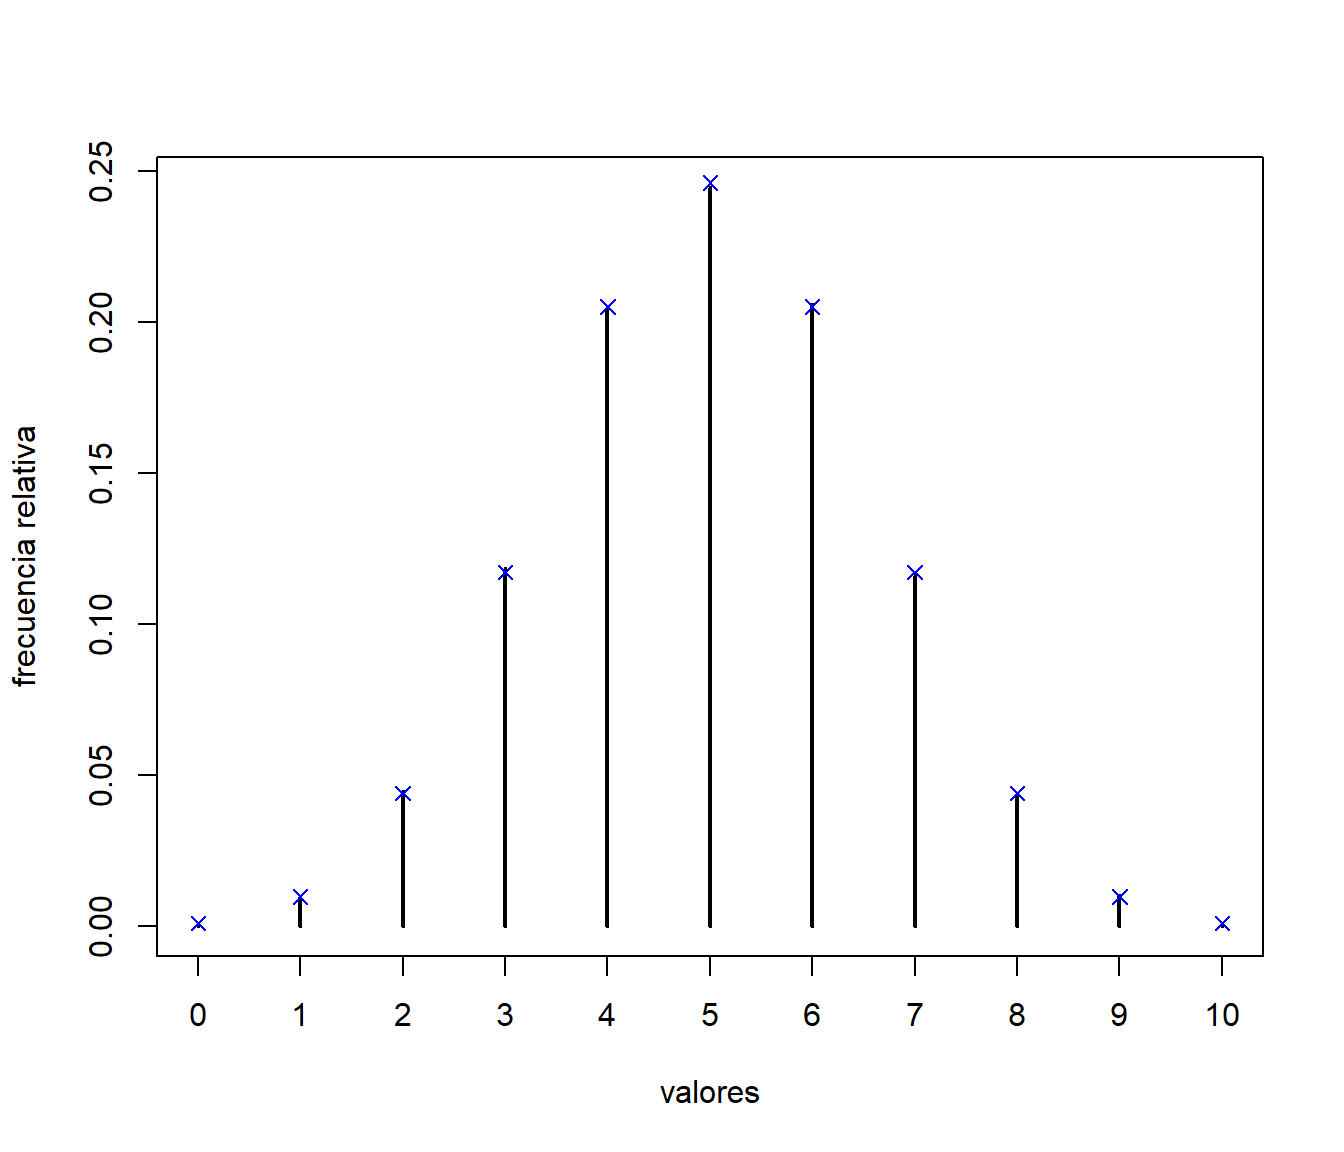 Comparación de las frecuencias relativas de los valores generados, mediante el método de la tabla guía, con las probabilidades teóricas.